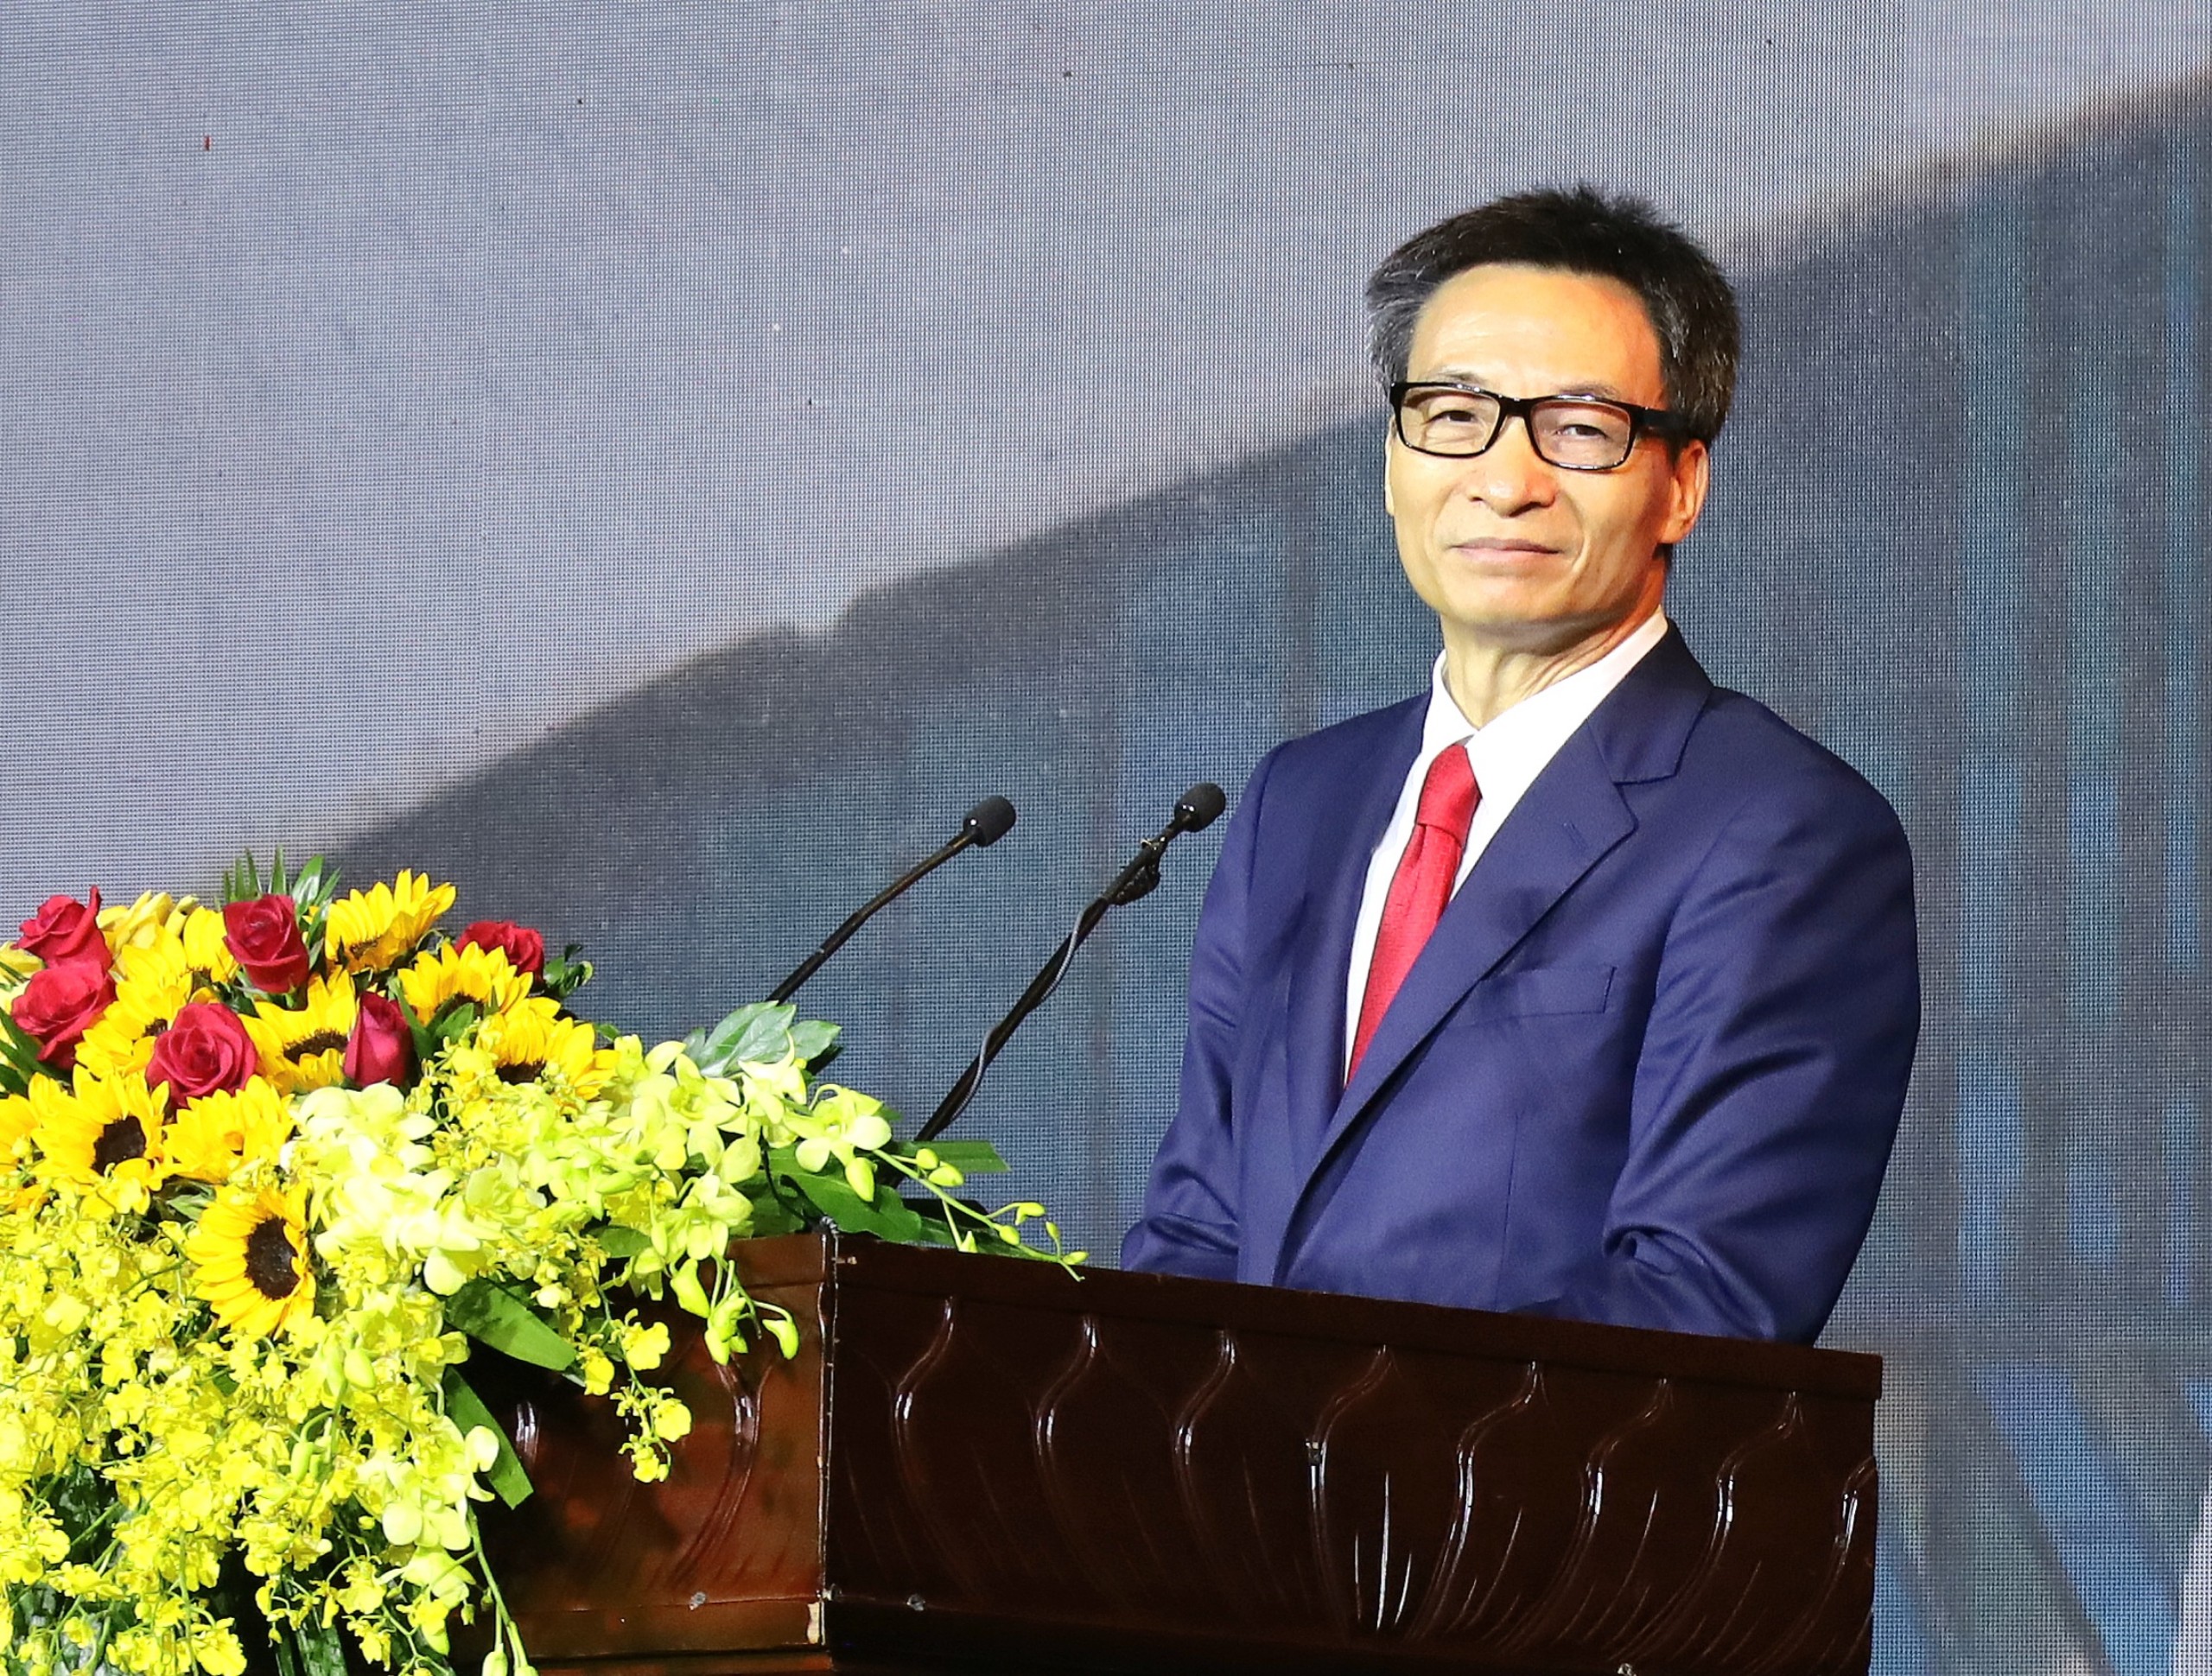 Phó Thủ tướng Chính phủ Vũ Đức Đam phát biểu chỉ đạo tại Hội nghị Xúc tiến Đầu tư tỉnh Bạc Liêu.